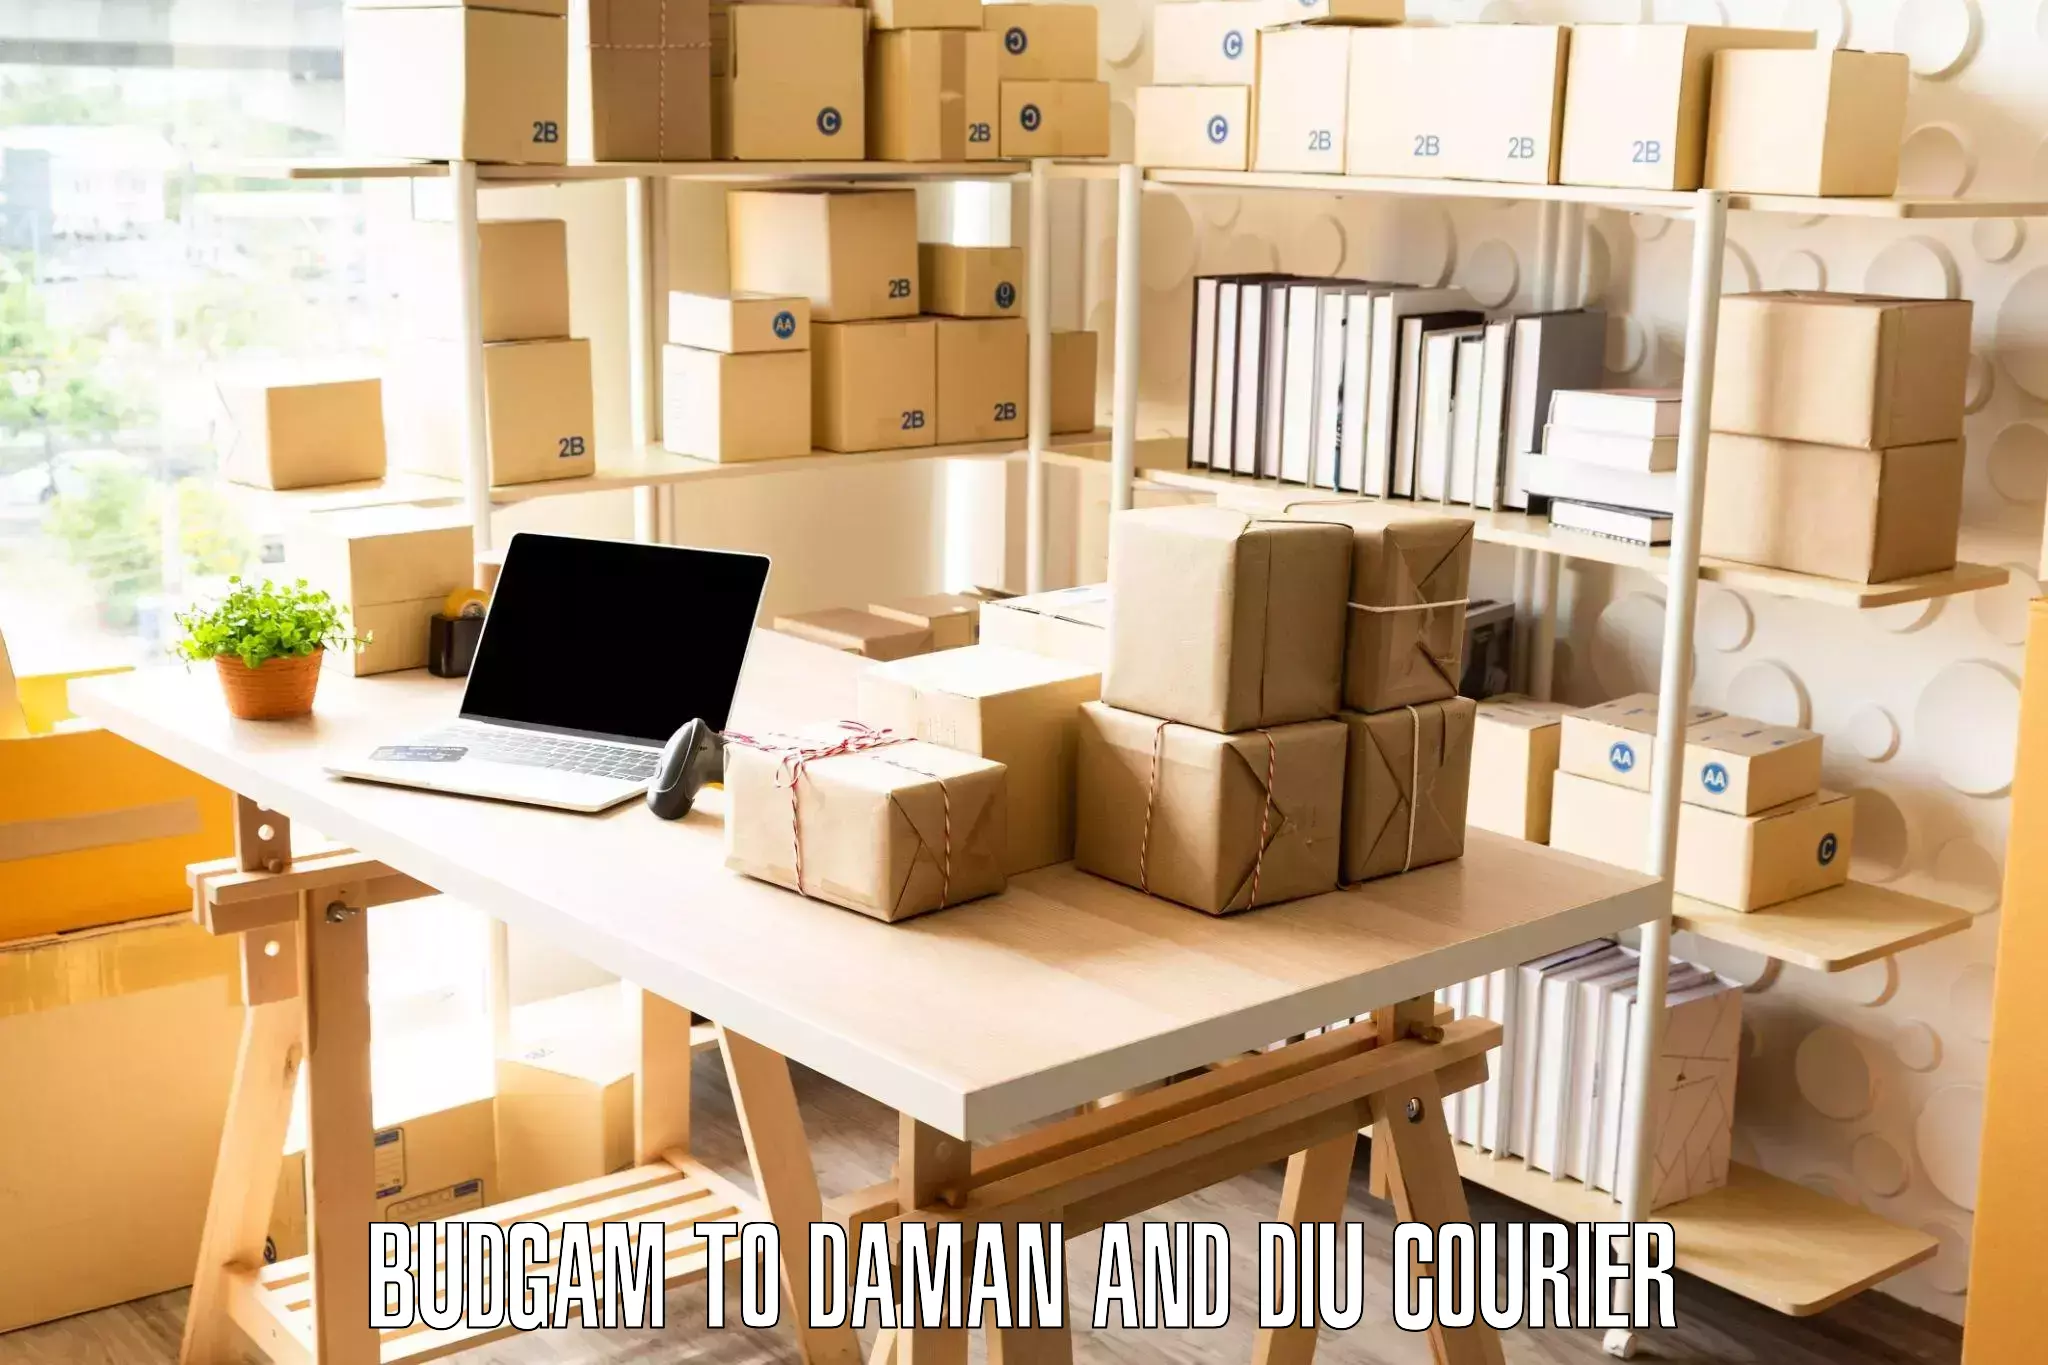 Comprehensive goods transport Budgam to Daman and Diu